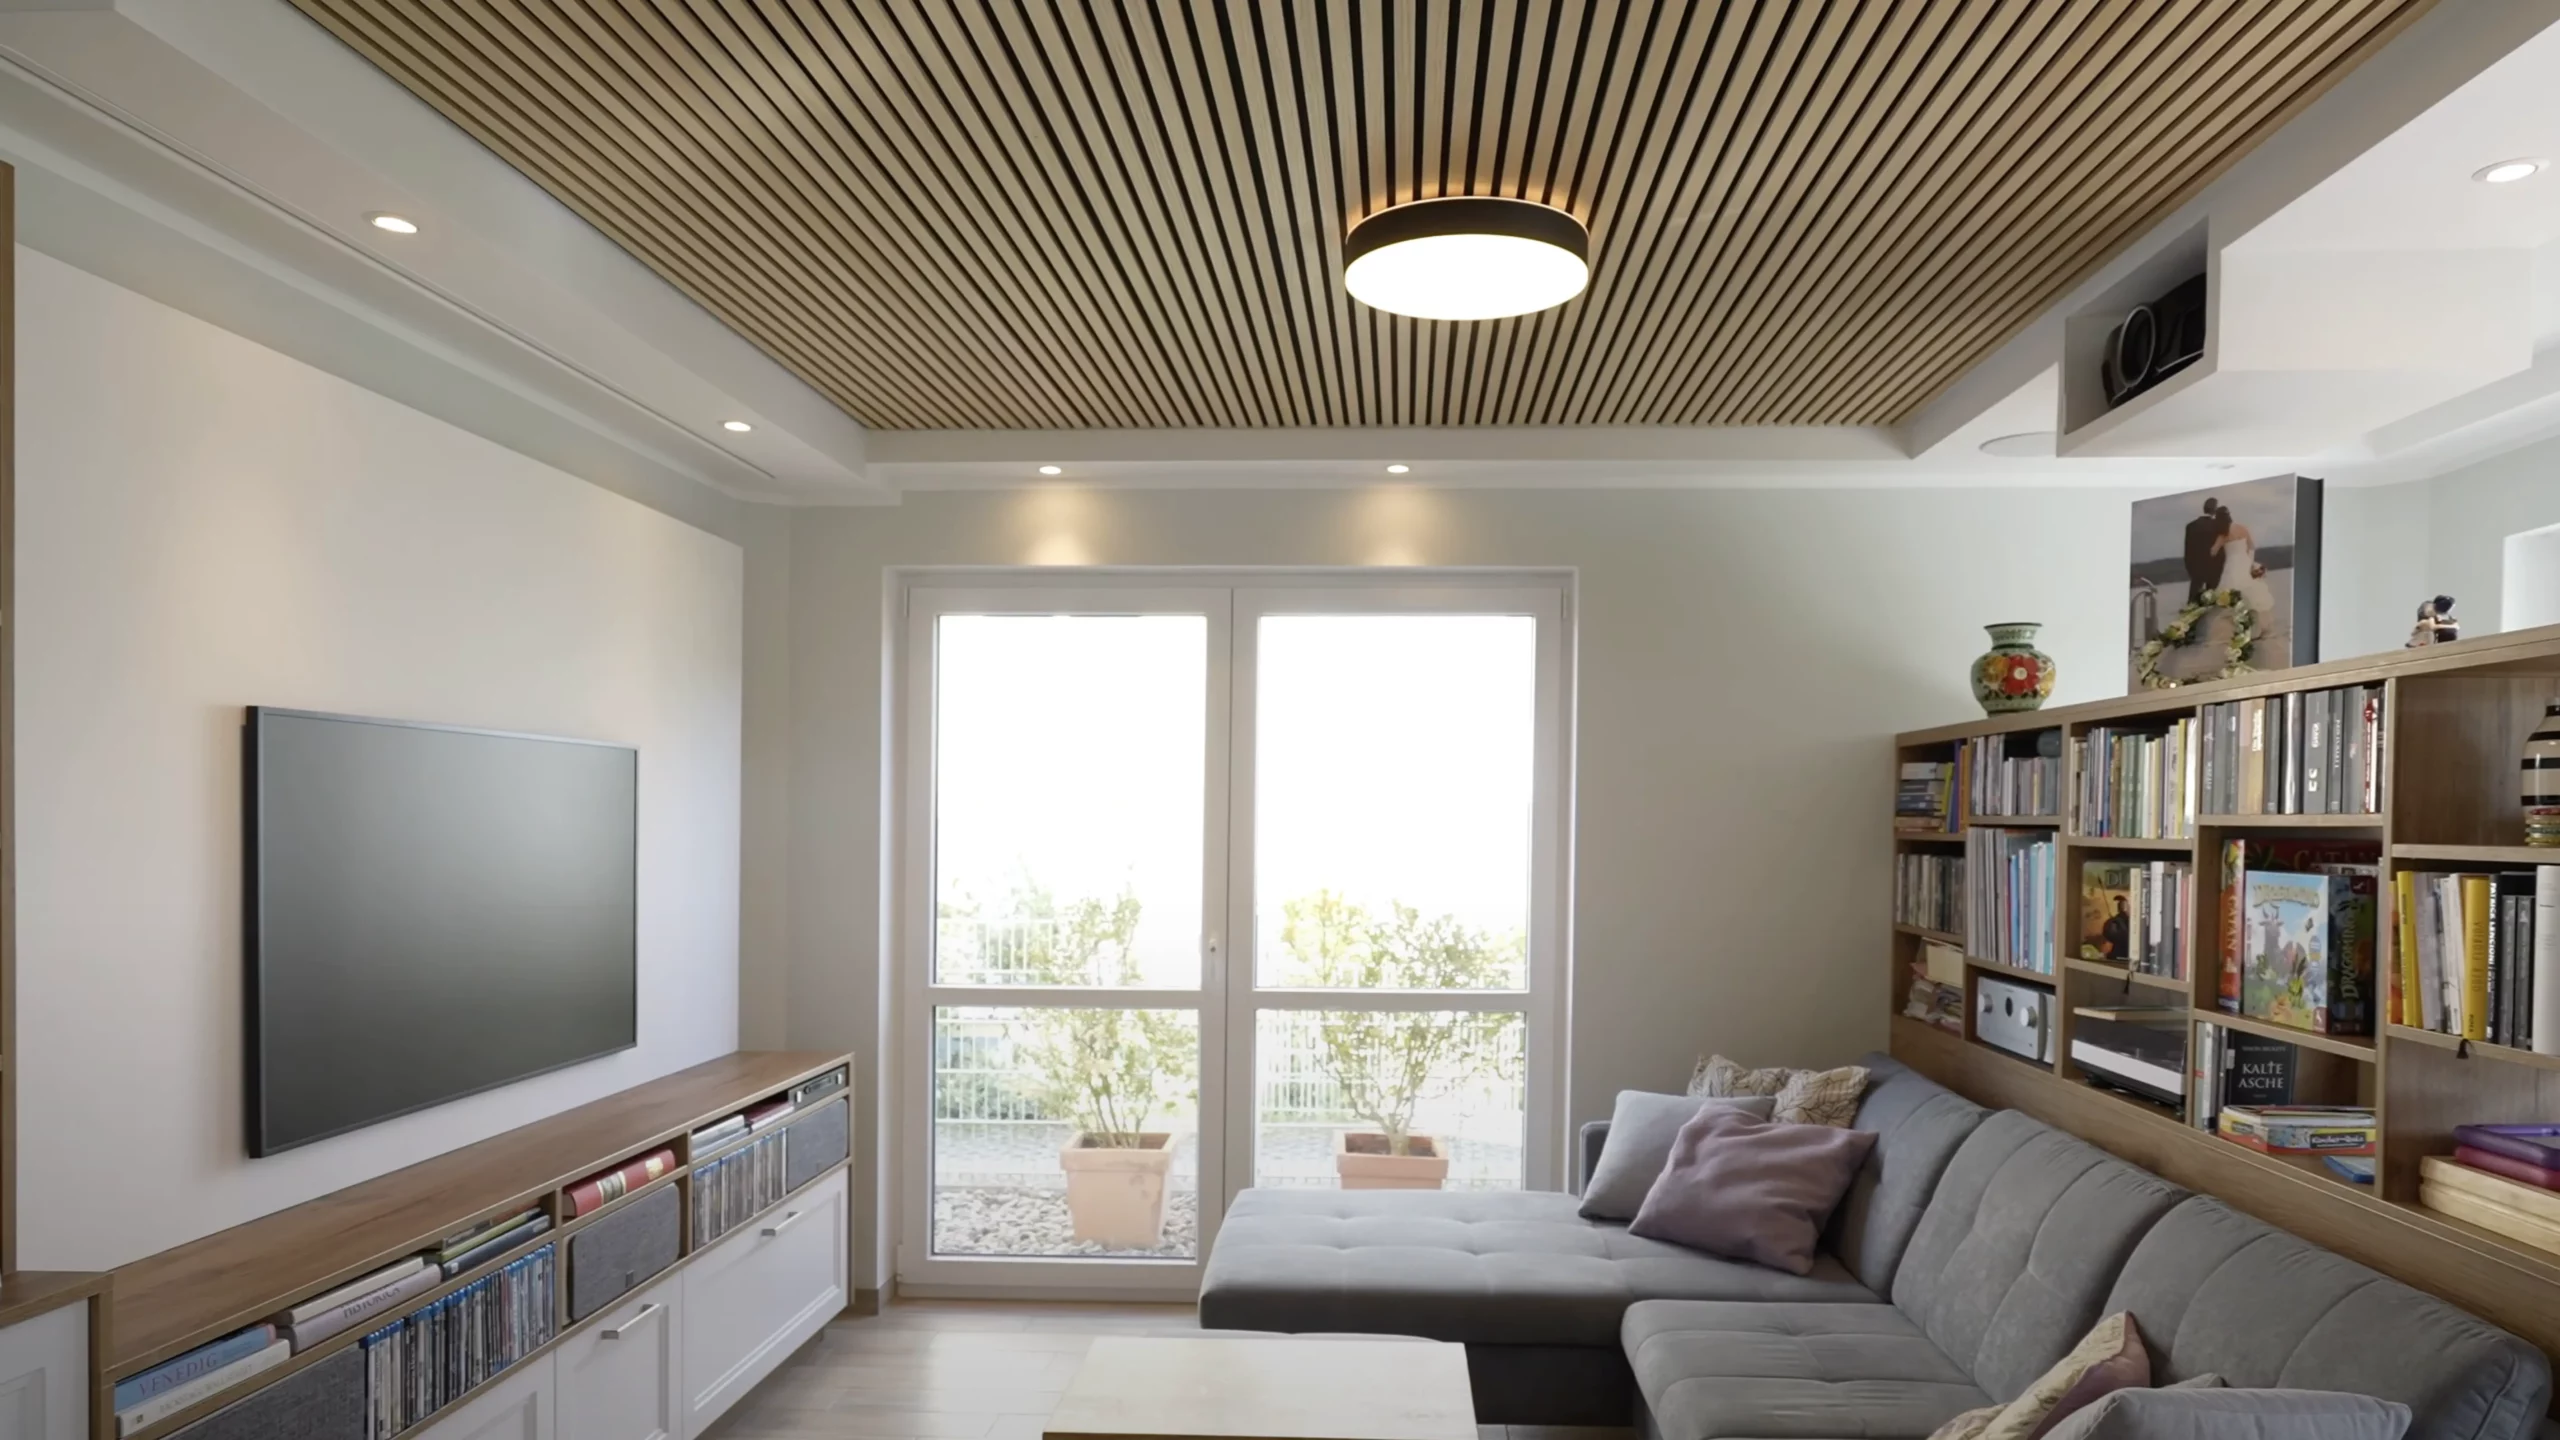 Modernes Wohnzimmer im mit Holzlamellen Decke mit stilvoll integriertem Heimkino. In diesem Wohnzimmer gibt es sowohl eine Fernseher- als auch eine Beamer-Leinwand Lösung.